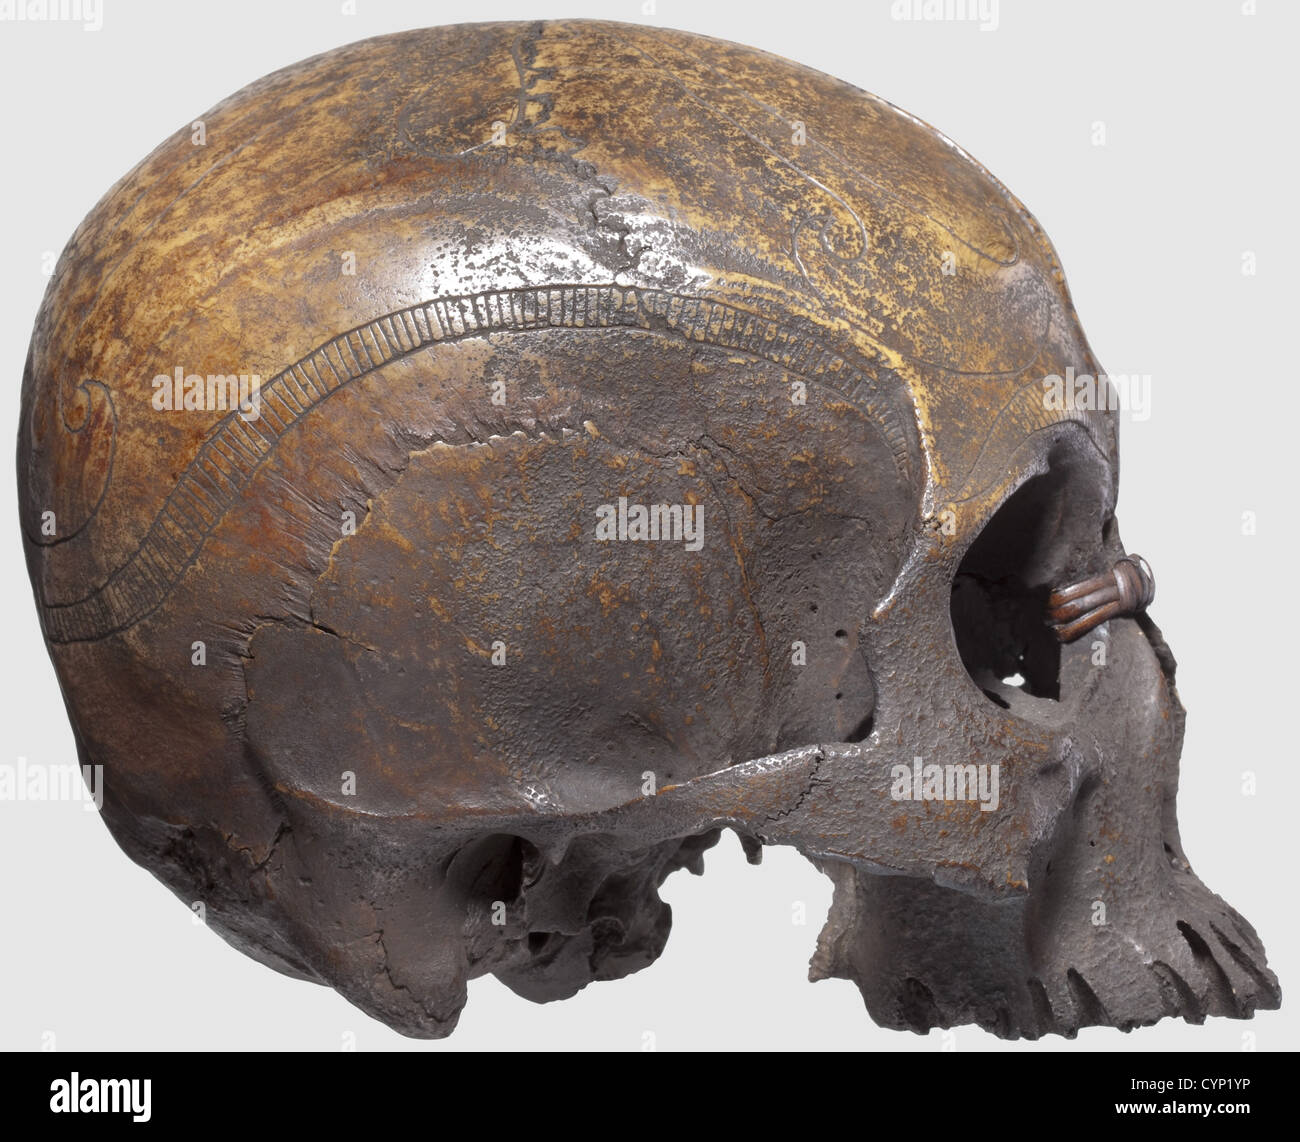 Eine Schädeltrophäe des Melawi Stammes, Borneo.Ornamental graviert Schädel, in der Mitte gespalten und fehlt der Unterkiefer.beide Hälften des Schädels durch ein Rattan Netz an der Nase und der Parietalknochen verbunden.der ganze Schädel patiniert,mit deutlichen Spuren des Alters an den Gesichtsknochen.Höhe 14 cm.die Tradition der Die Kopfjagd wurde unter den indigenen Stämmen von Borneo bis zum Ende des 19. Jahrhunderts praktiziert, als sie schließlich von den Kolonialherren unterdrückt wurde.die Aufteilung der Trophäenschädel war Teil der speziellen Riten des Melawi-Stammes,manchmal t,zusätzliche Rechte-Clearences-nicht verfügbar Stockfoto